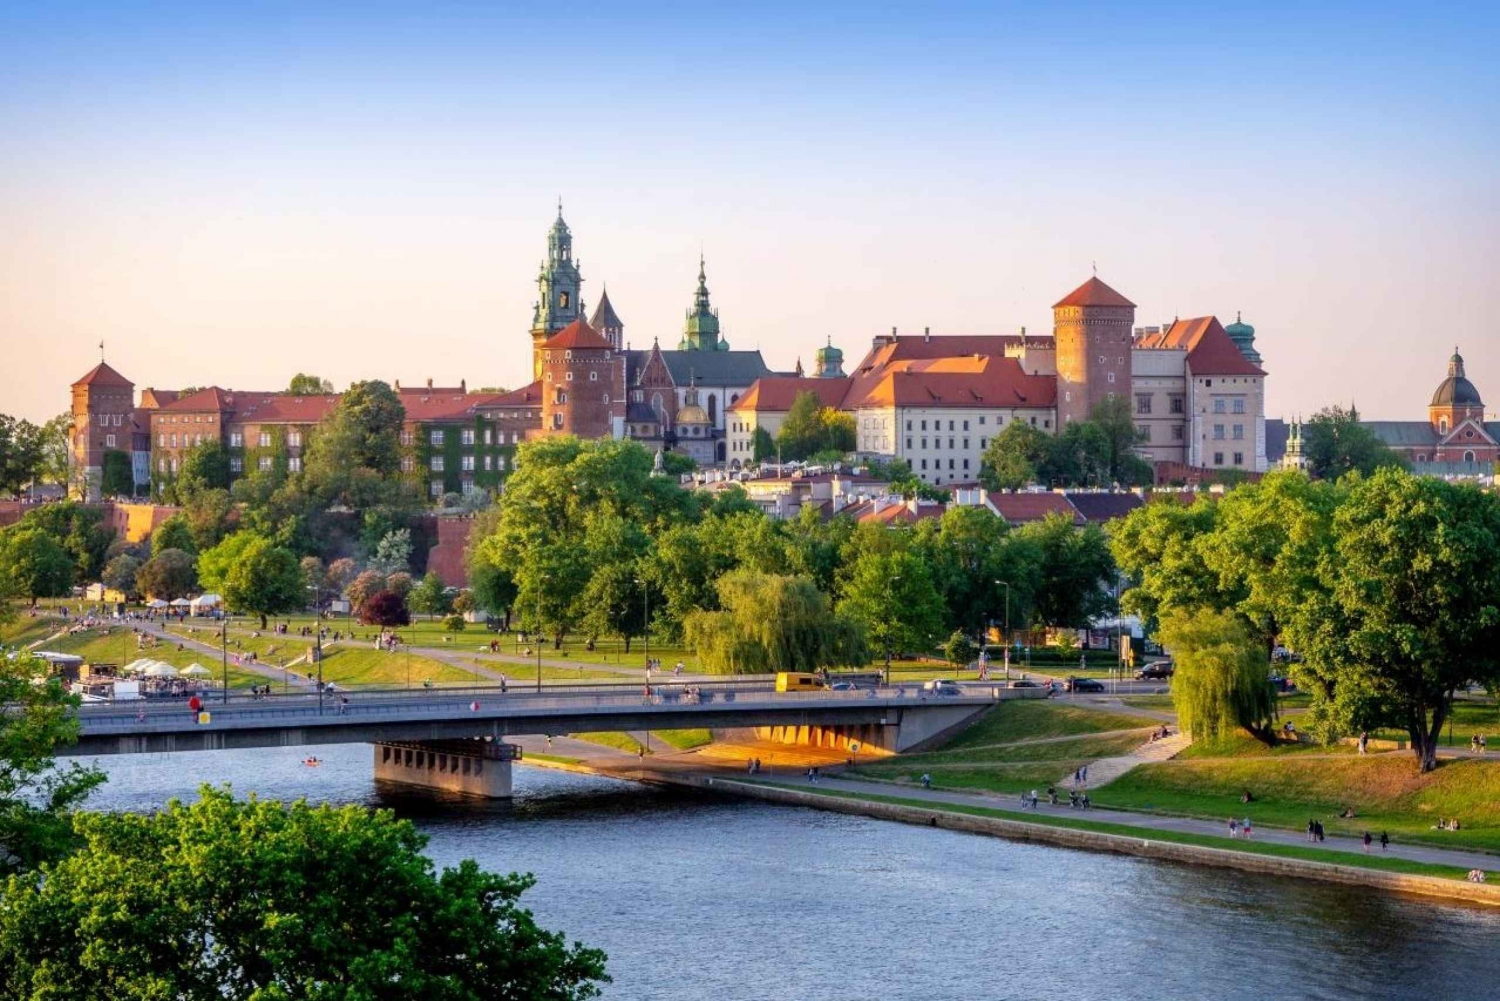 Krakau: Führung durch den Wawelhügel und die Marienbasilika